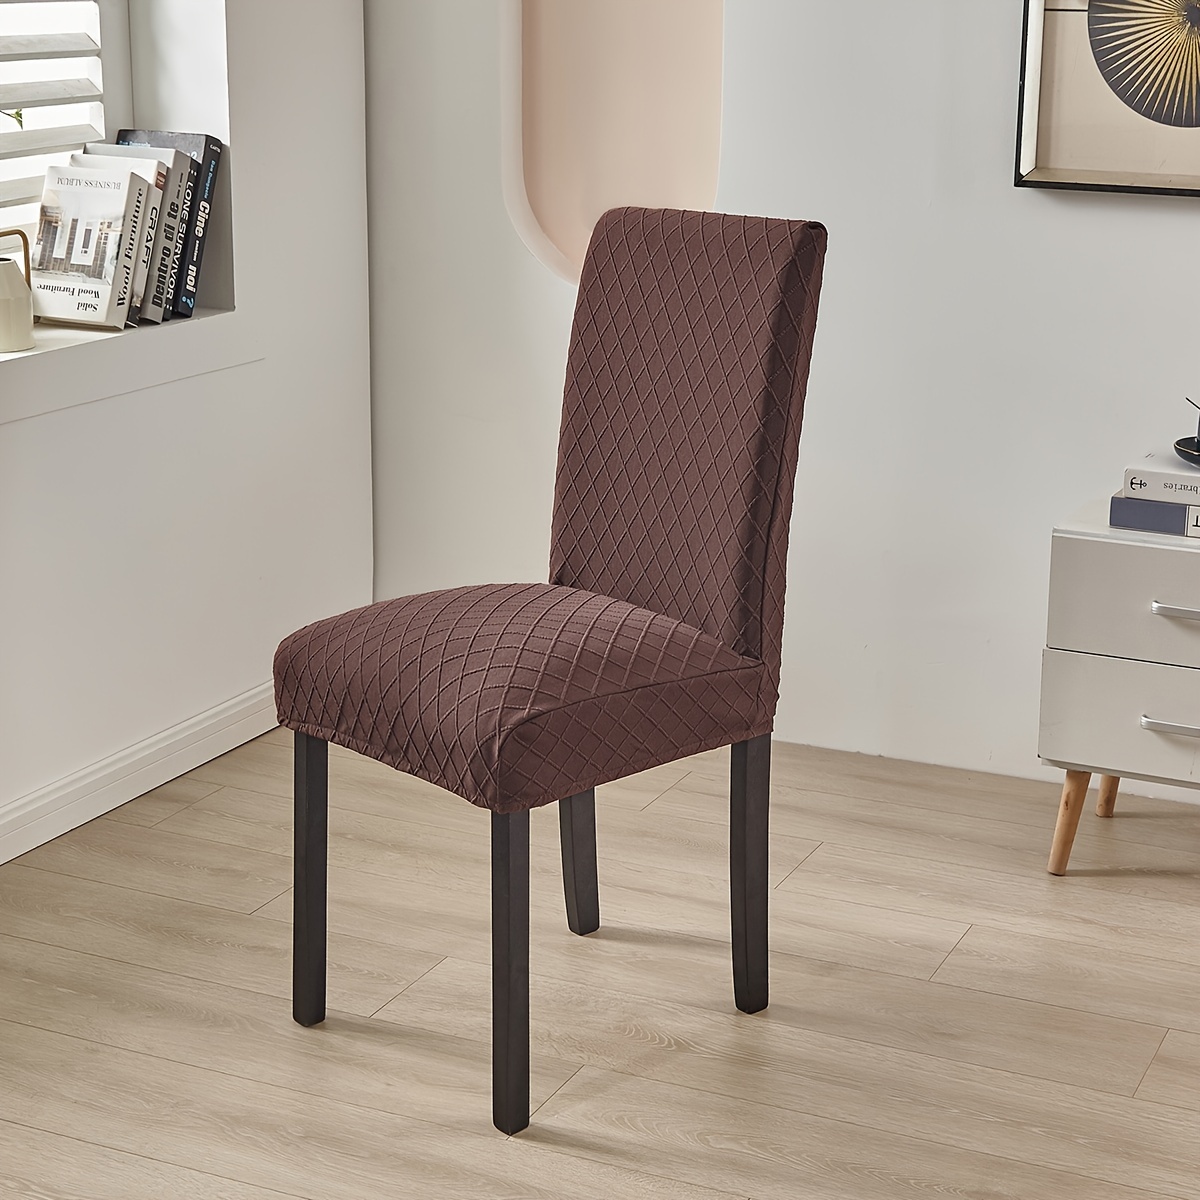 Fundas para sillas de comedor, funda de felpa de elastano suave para silla  de respaldo alto, lavable, extraíble, protector para silla de comedor